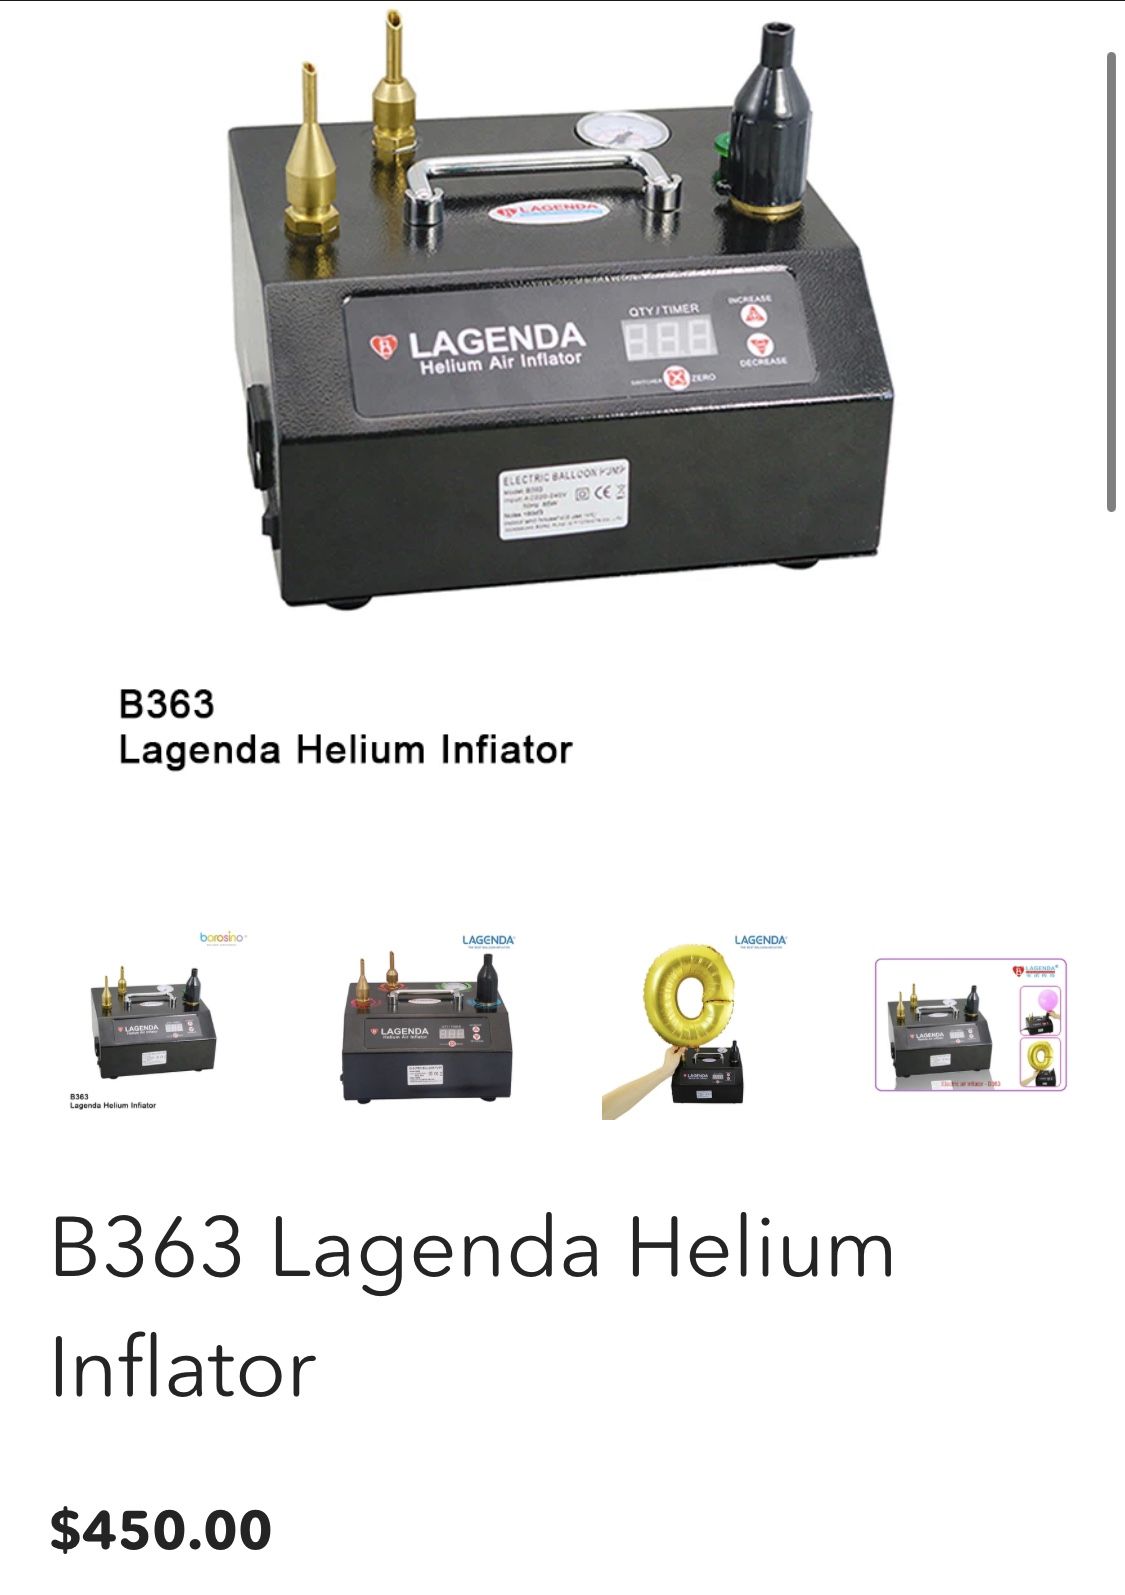 B363 Lagenda Helium Inflator